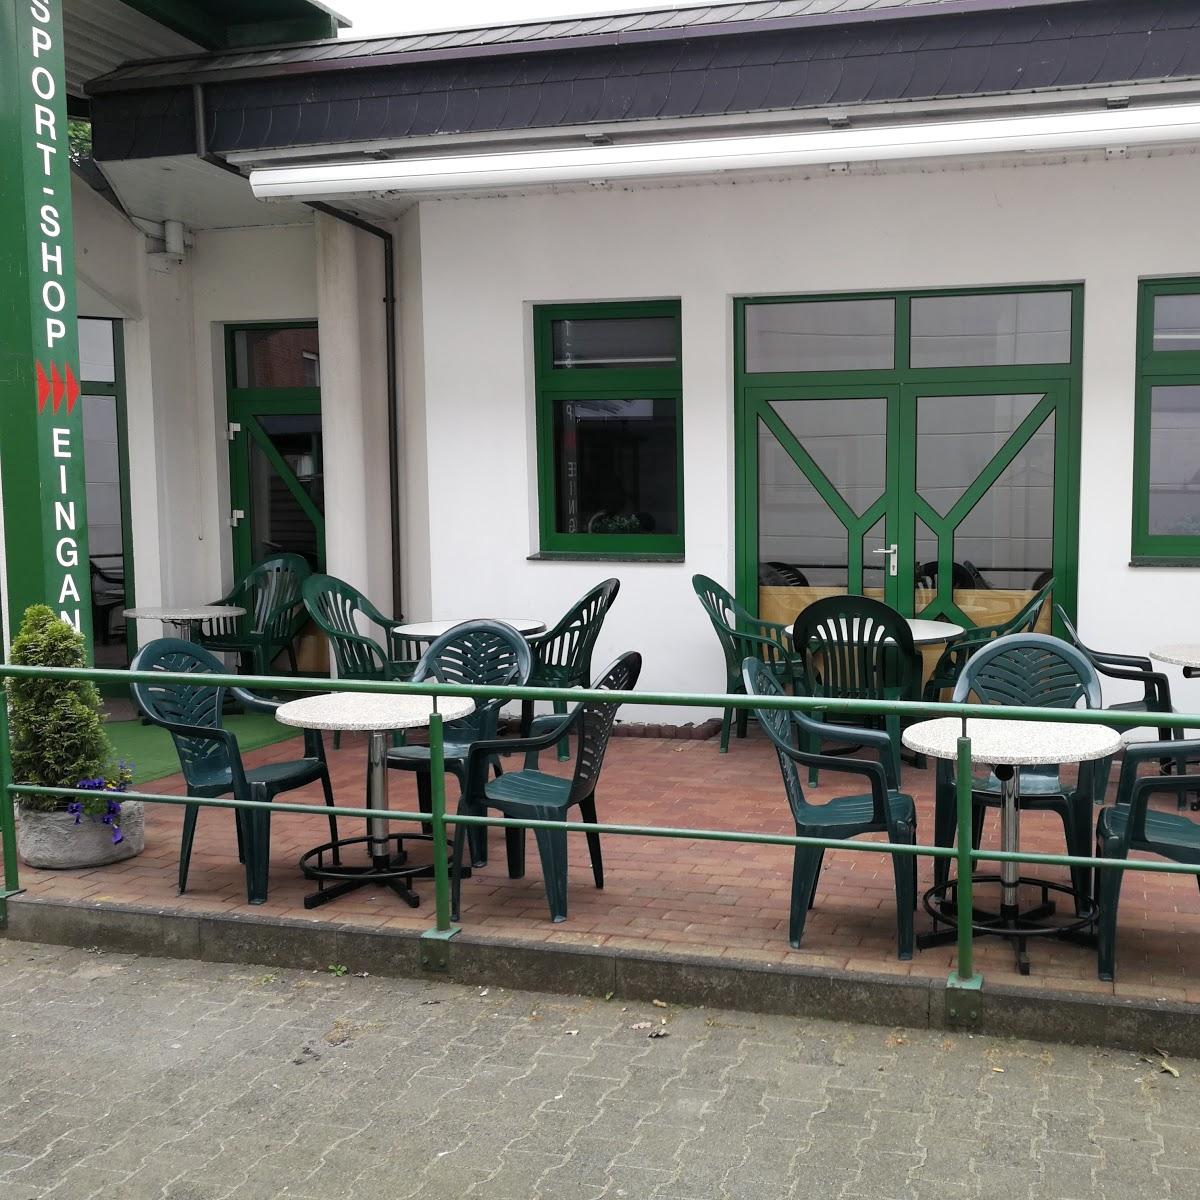 Restaurant "PIZZERIA RESTAURANT FATTORIA SHS" in Schloß Holte-Stukenbrock